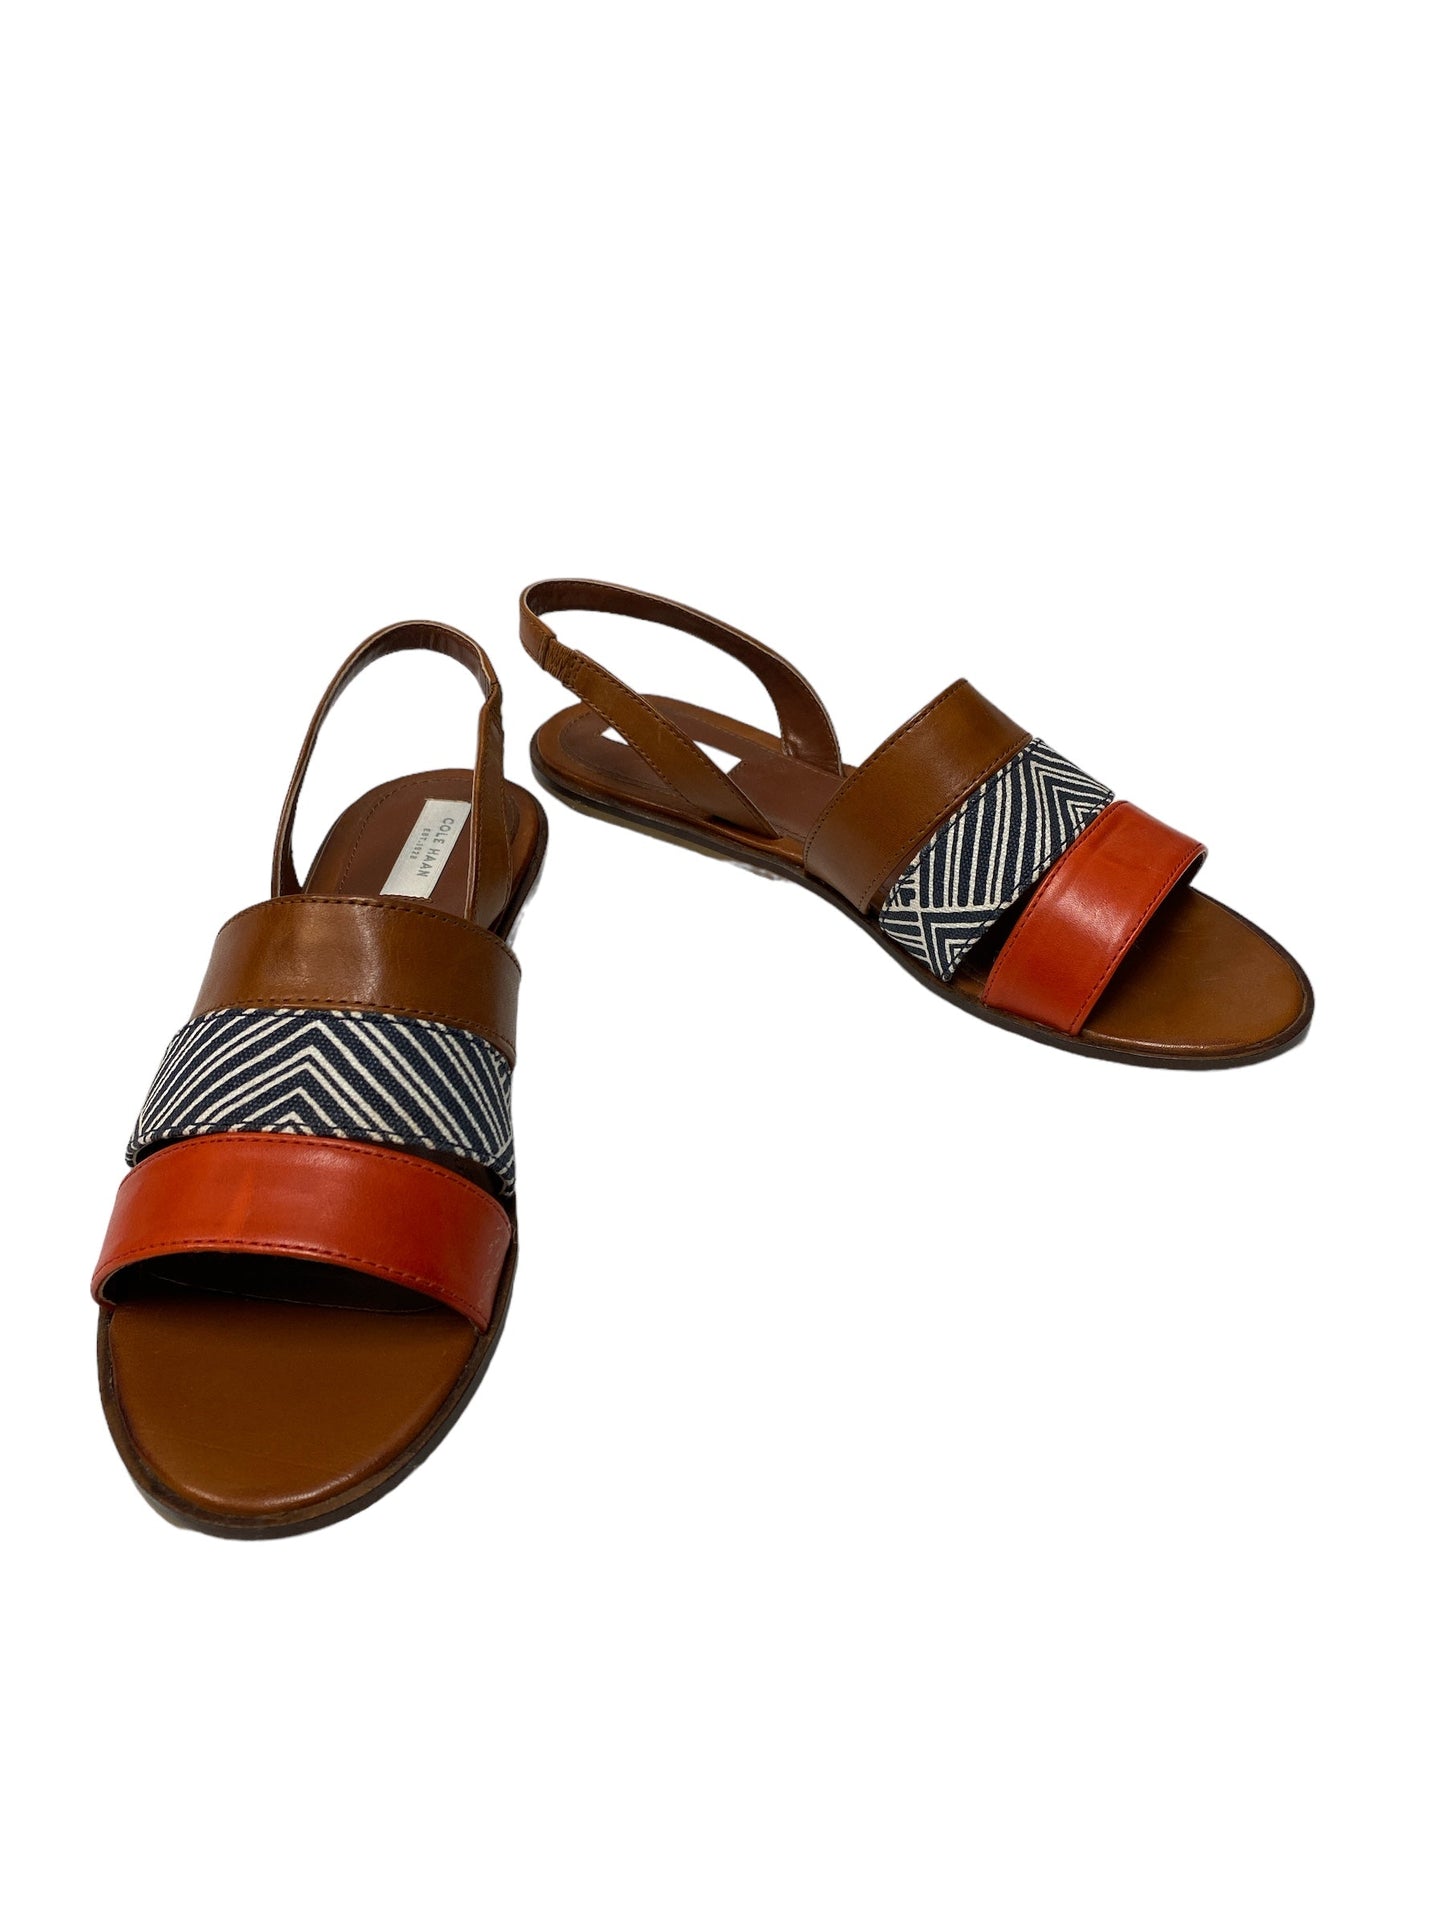 Brown & Orange Sandals Designer Cole-haan, Size 7.5